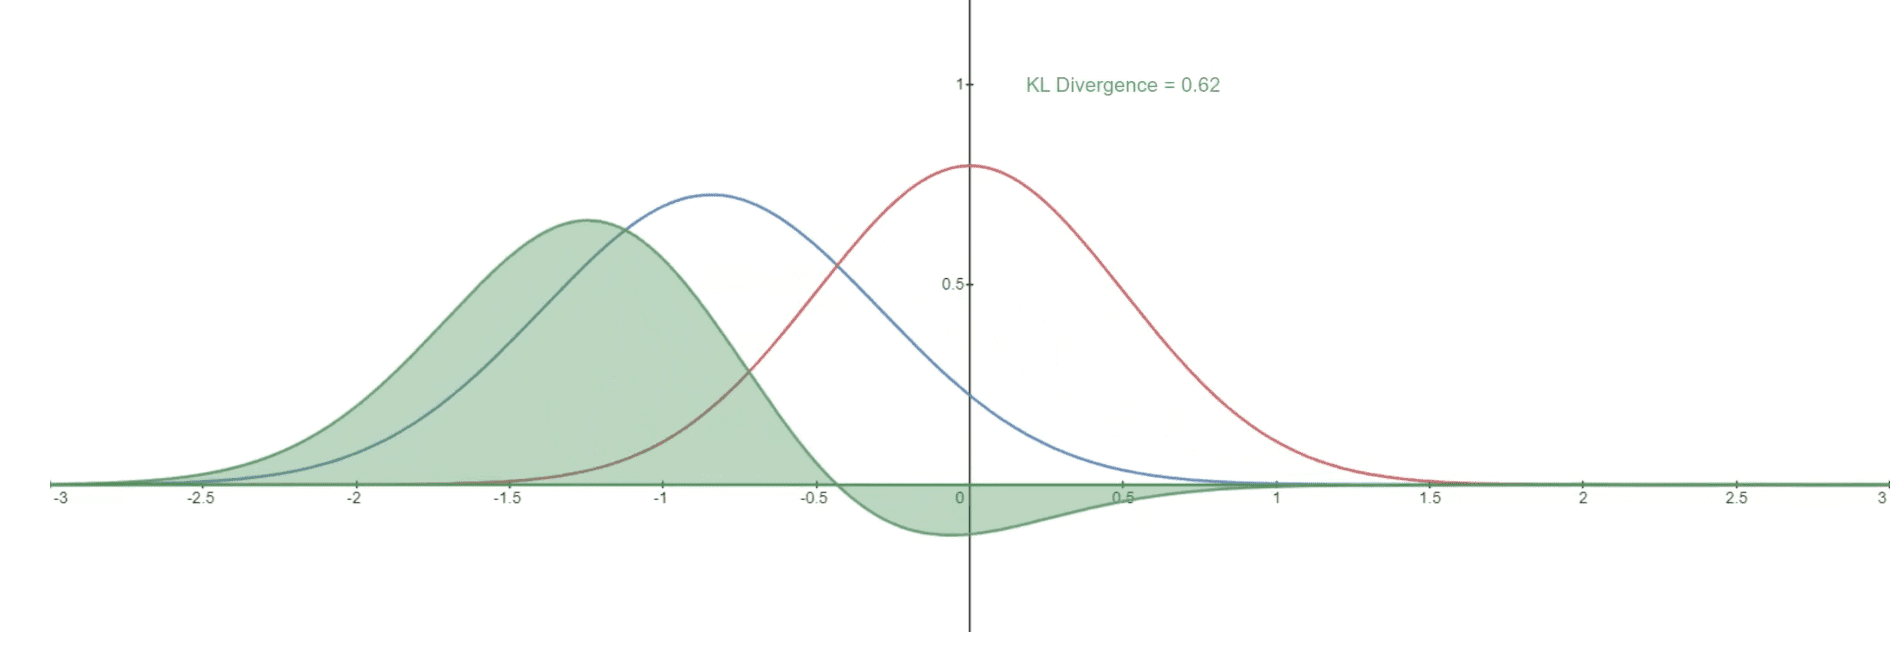 KL Divergence curves